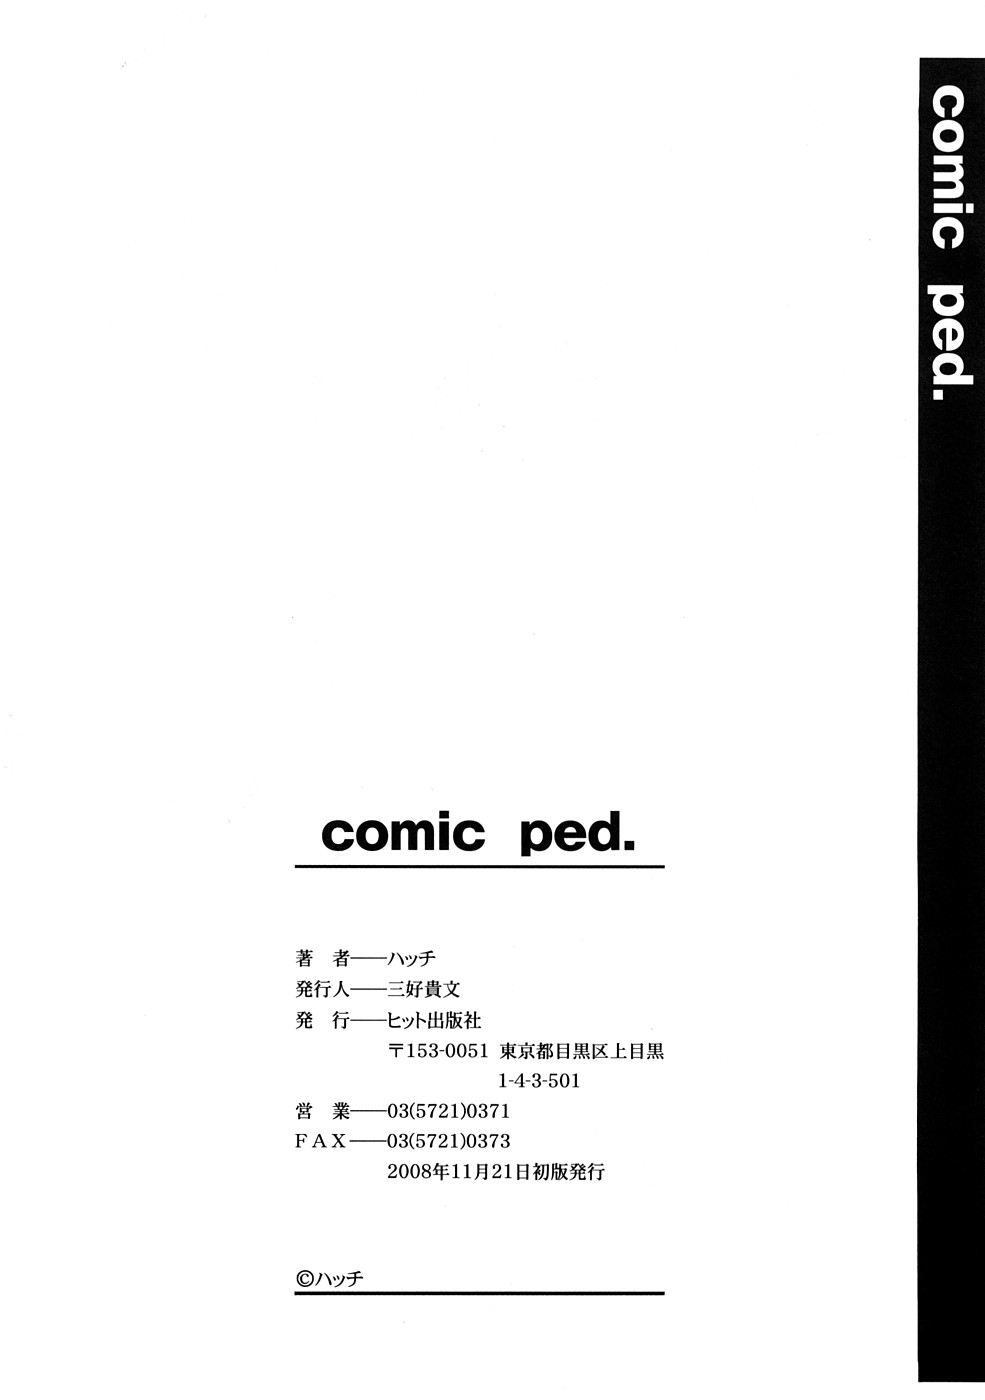 [ハッチ] comic ped.